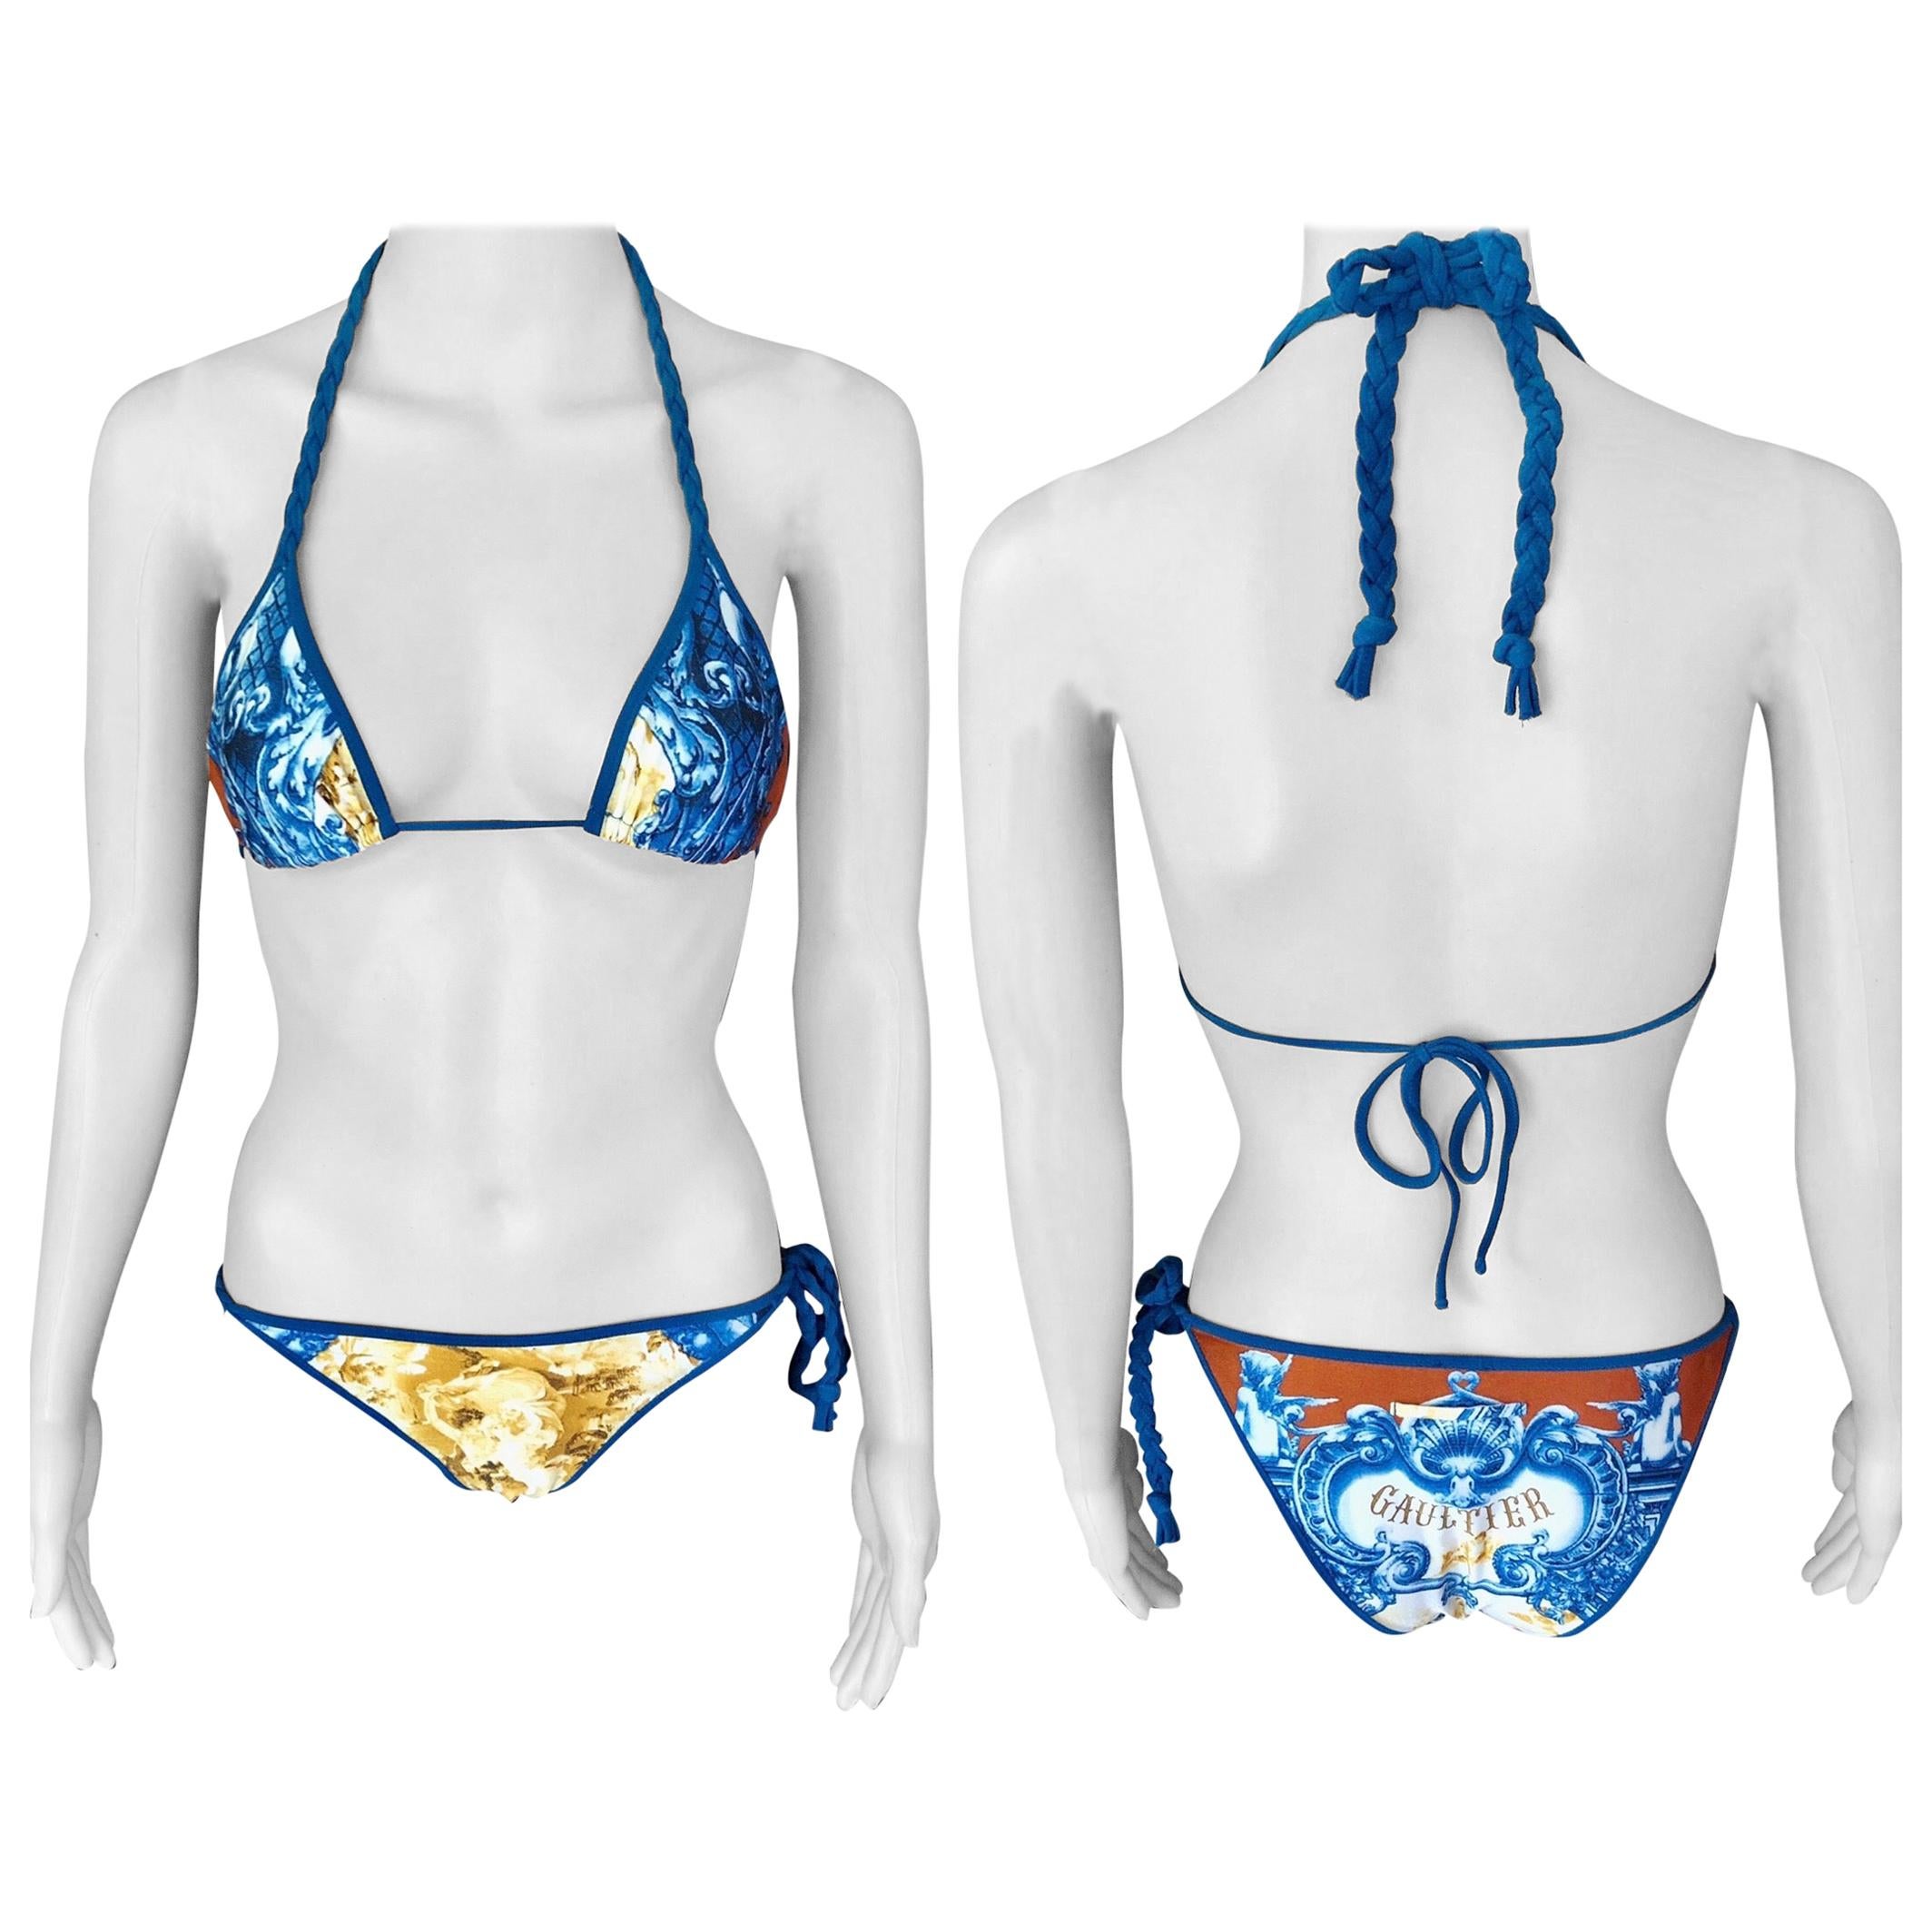 Jean Paul Gaultier Soleil Bikini Swimwear Swimsuit